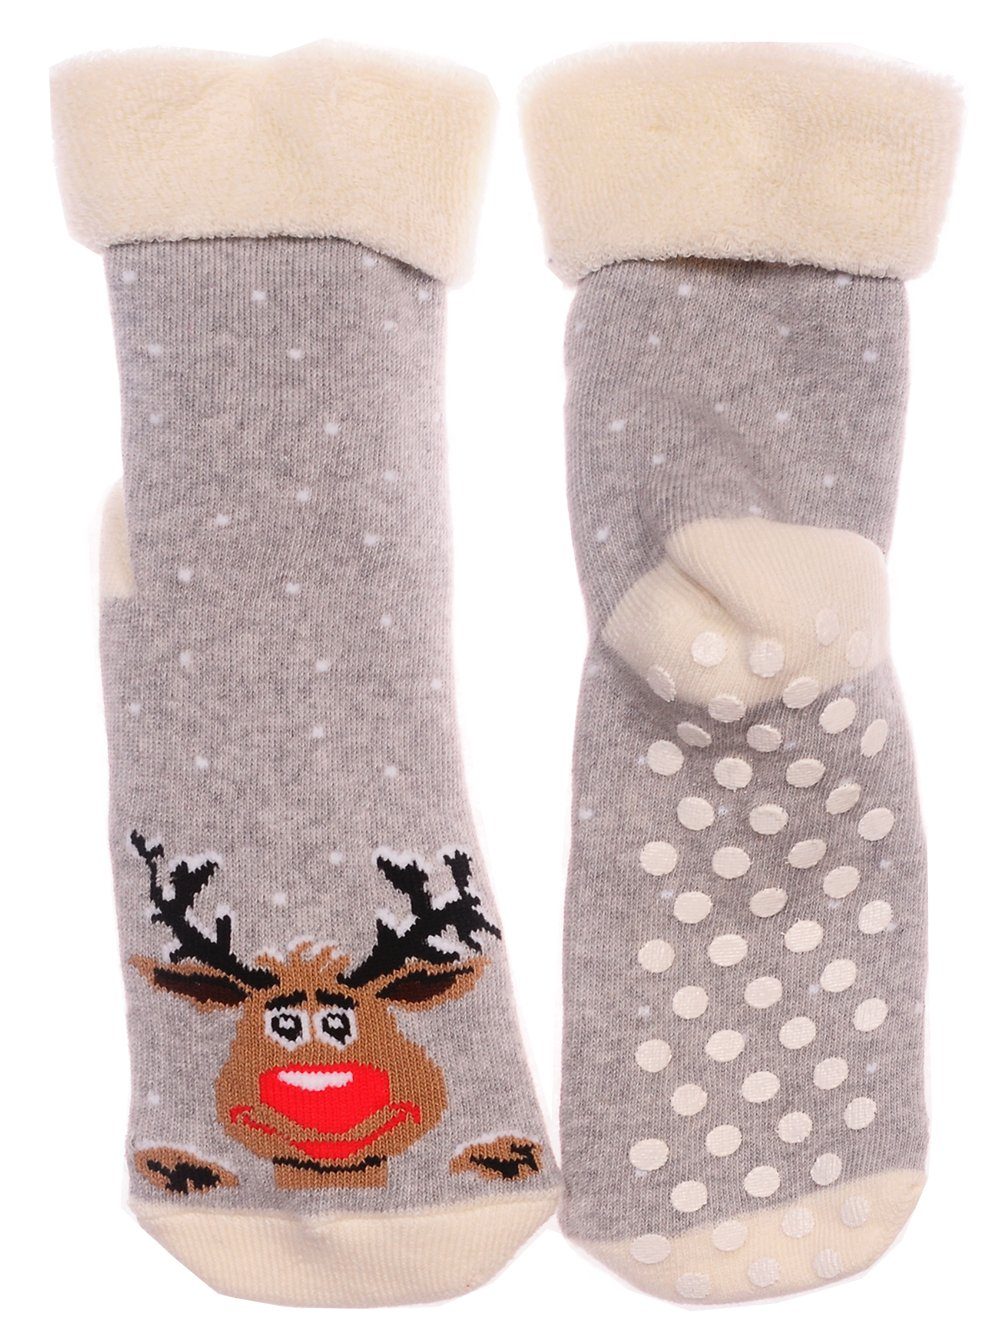 Martinex Thermosocken Socken Weihnachten Weihnachtssocken Antirutschsocken für Jugendliche und Erwachsene